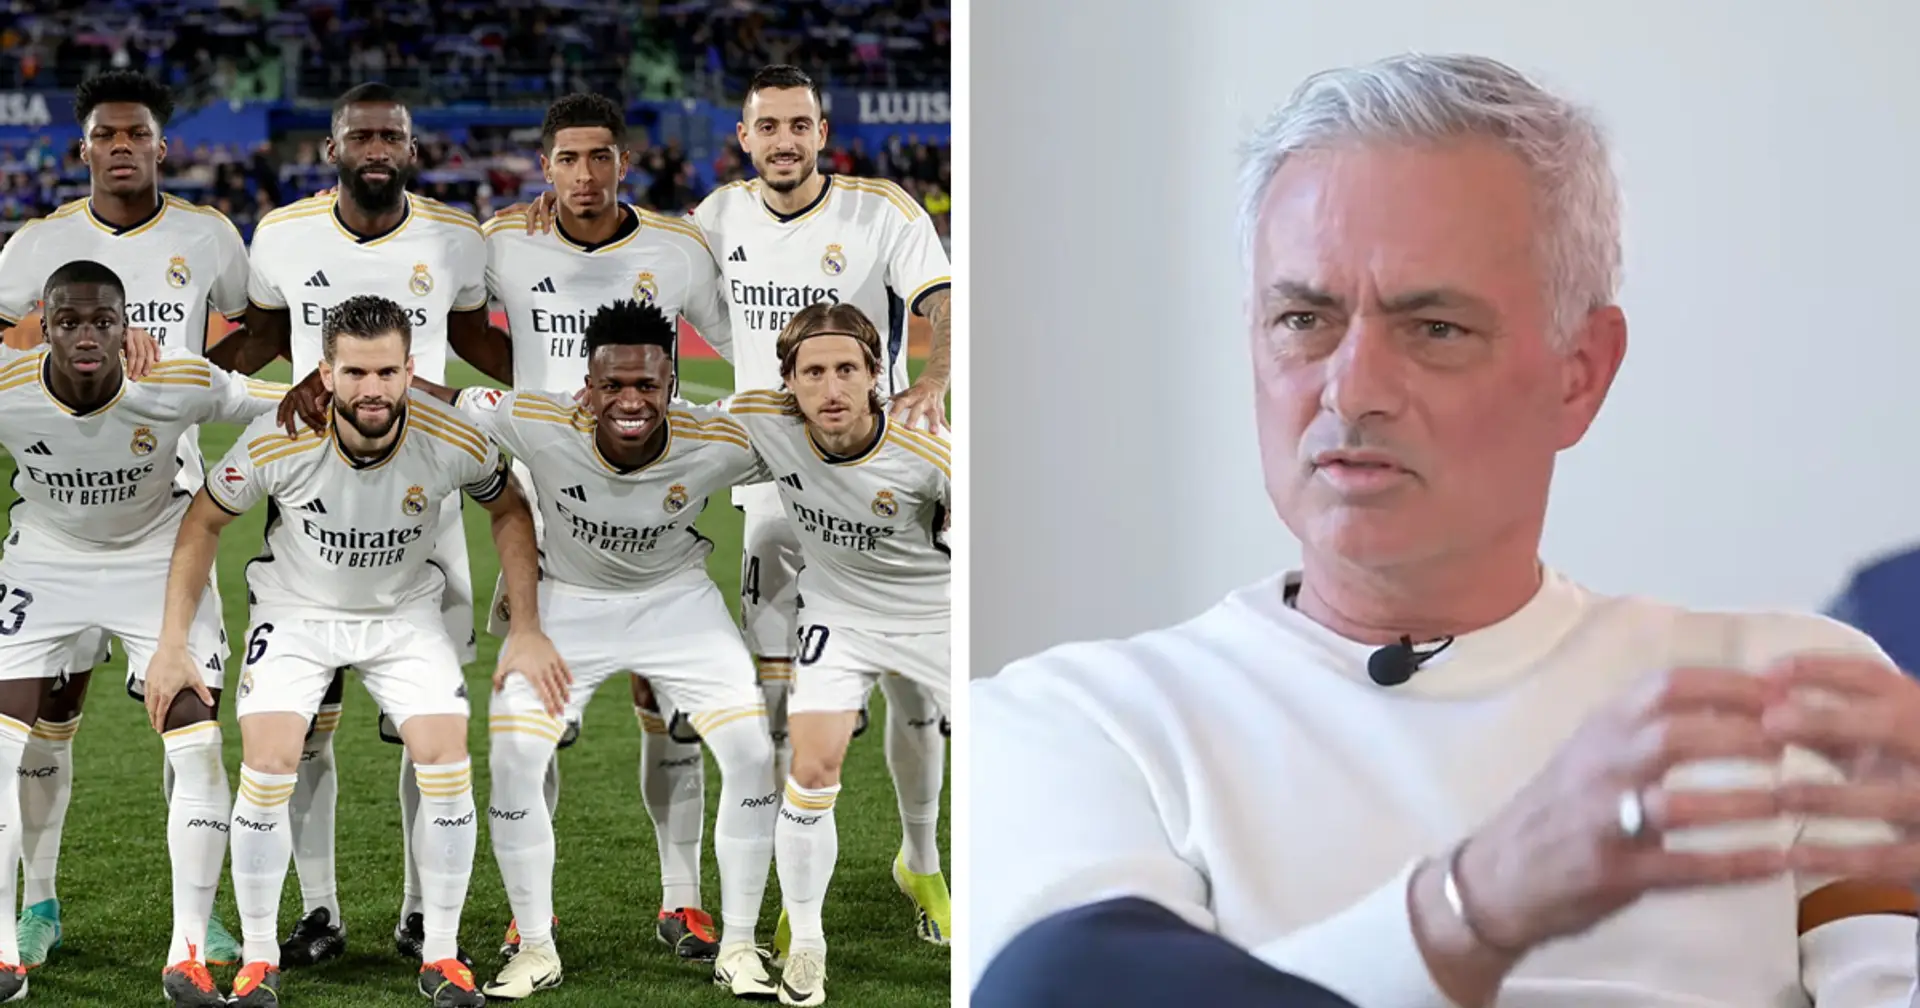 "Grande personnalité": José Mourinho nomme un joueur du Real Madrid qui pourrait mener son pays à la gloire à l'Euro 2024